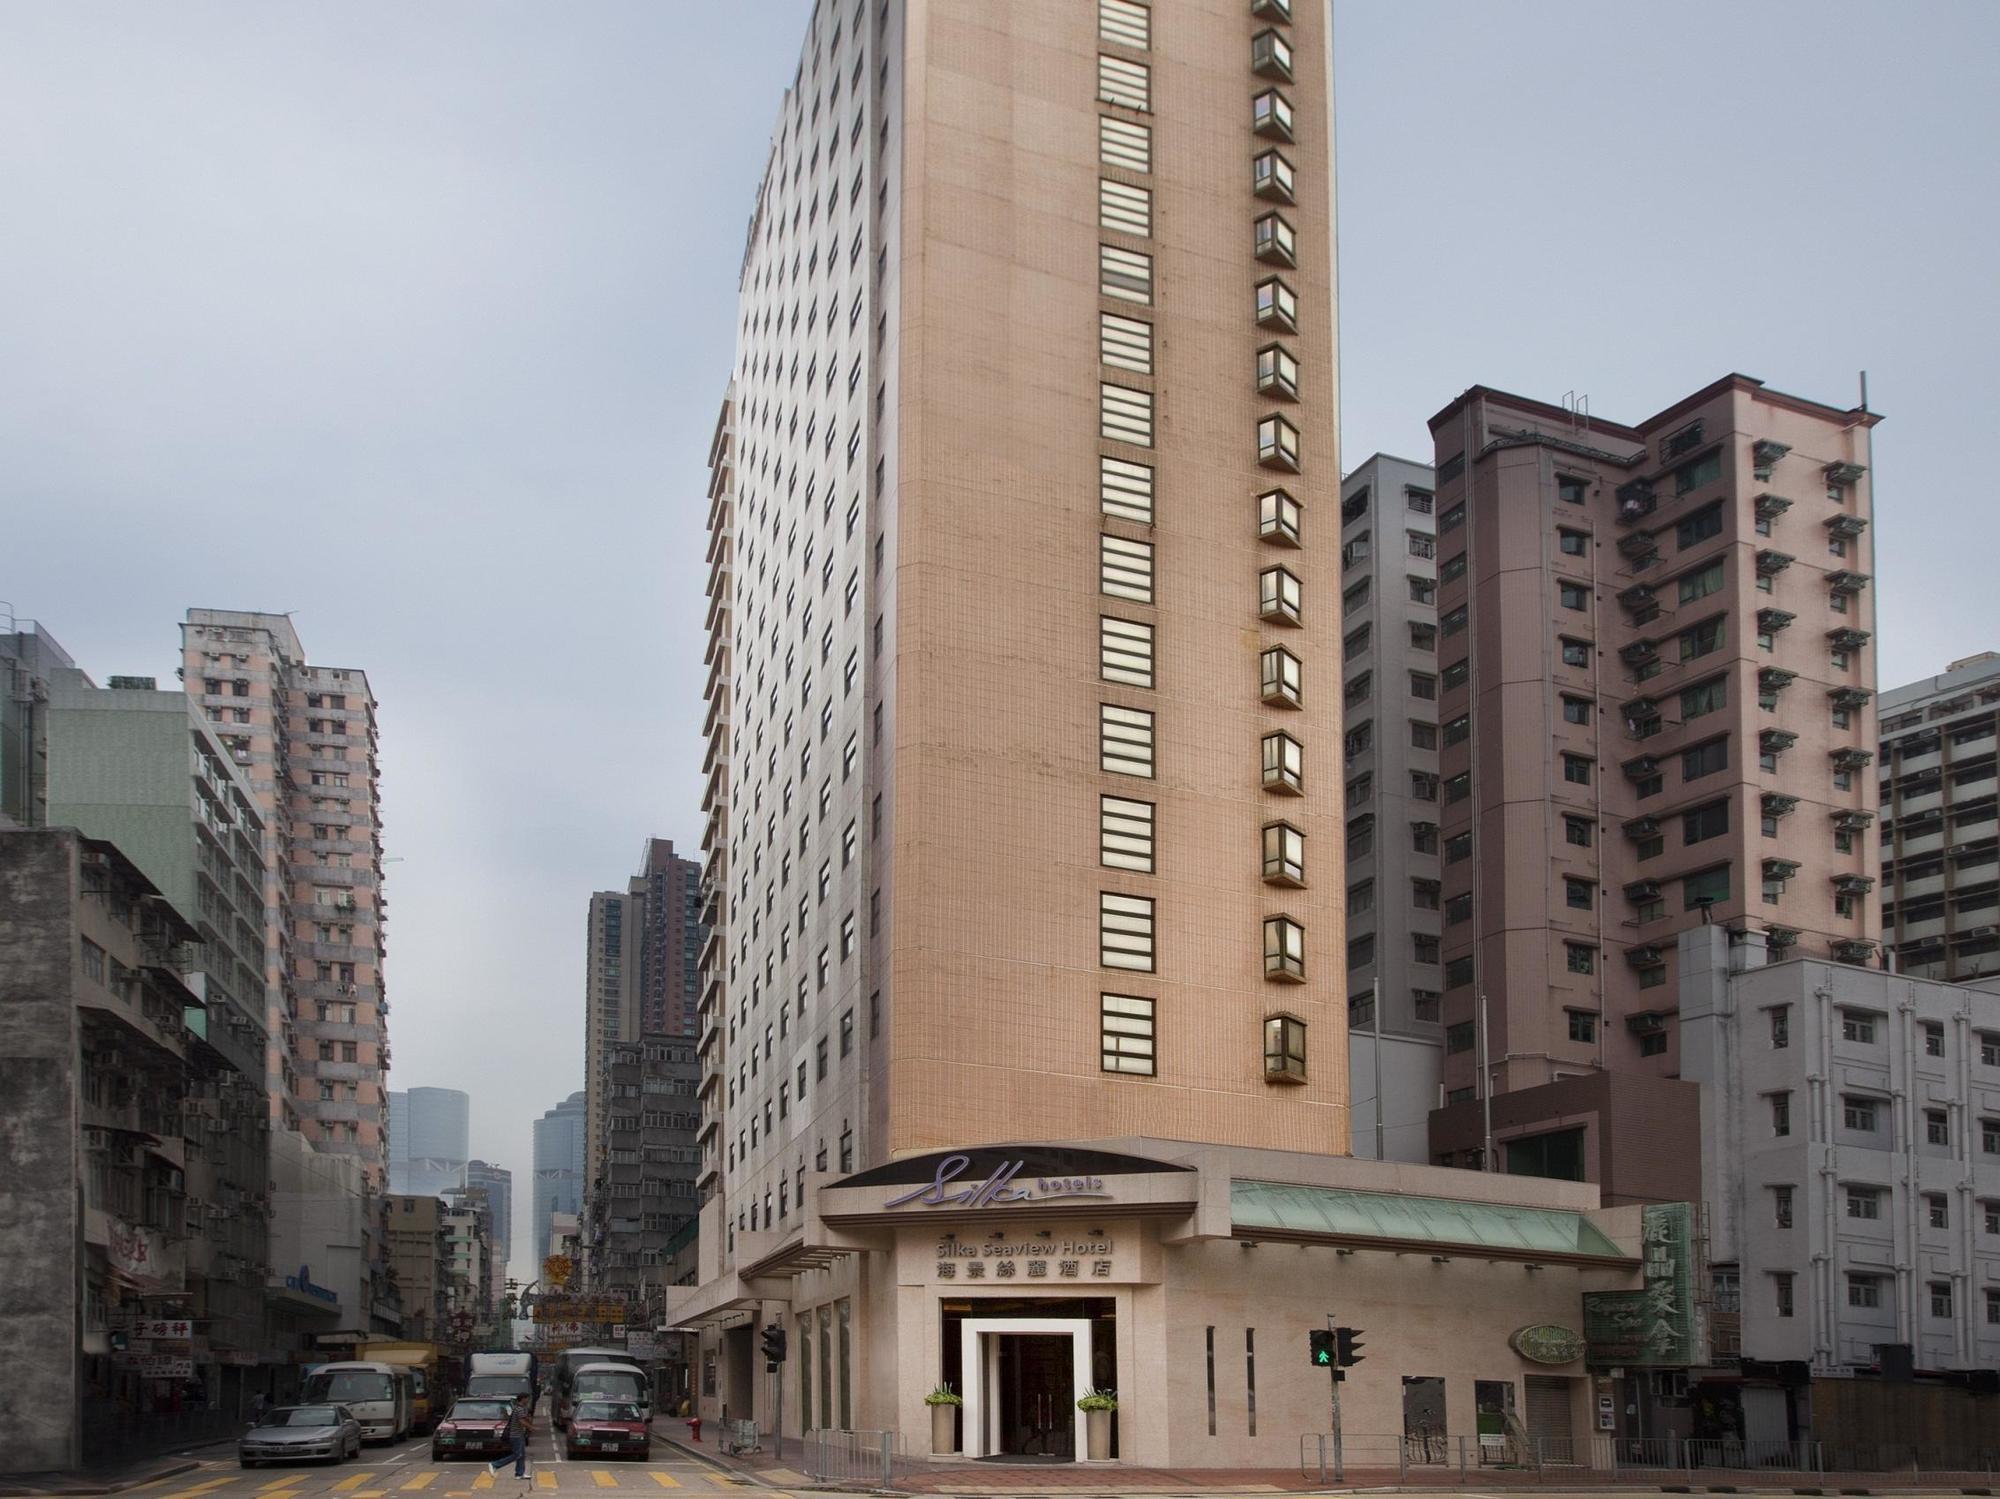 Silka Seaview Hotel Hong Kong Exterior photo